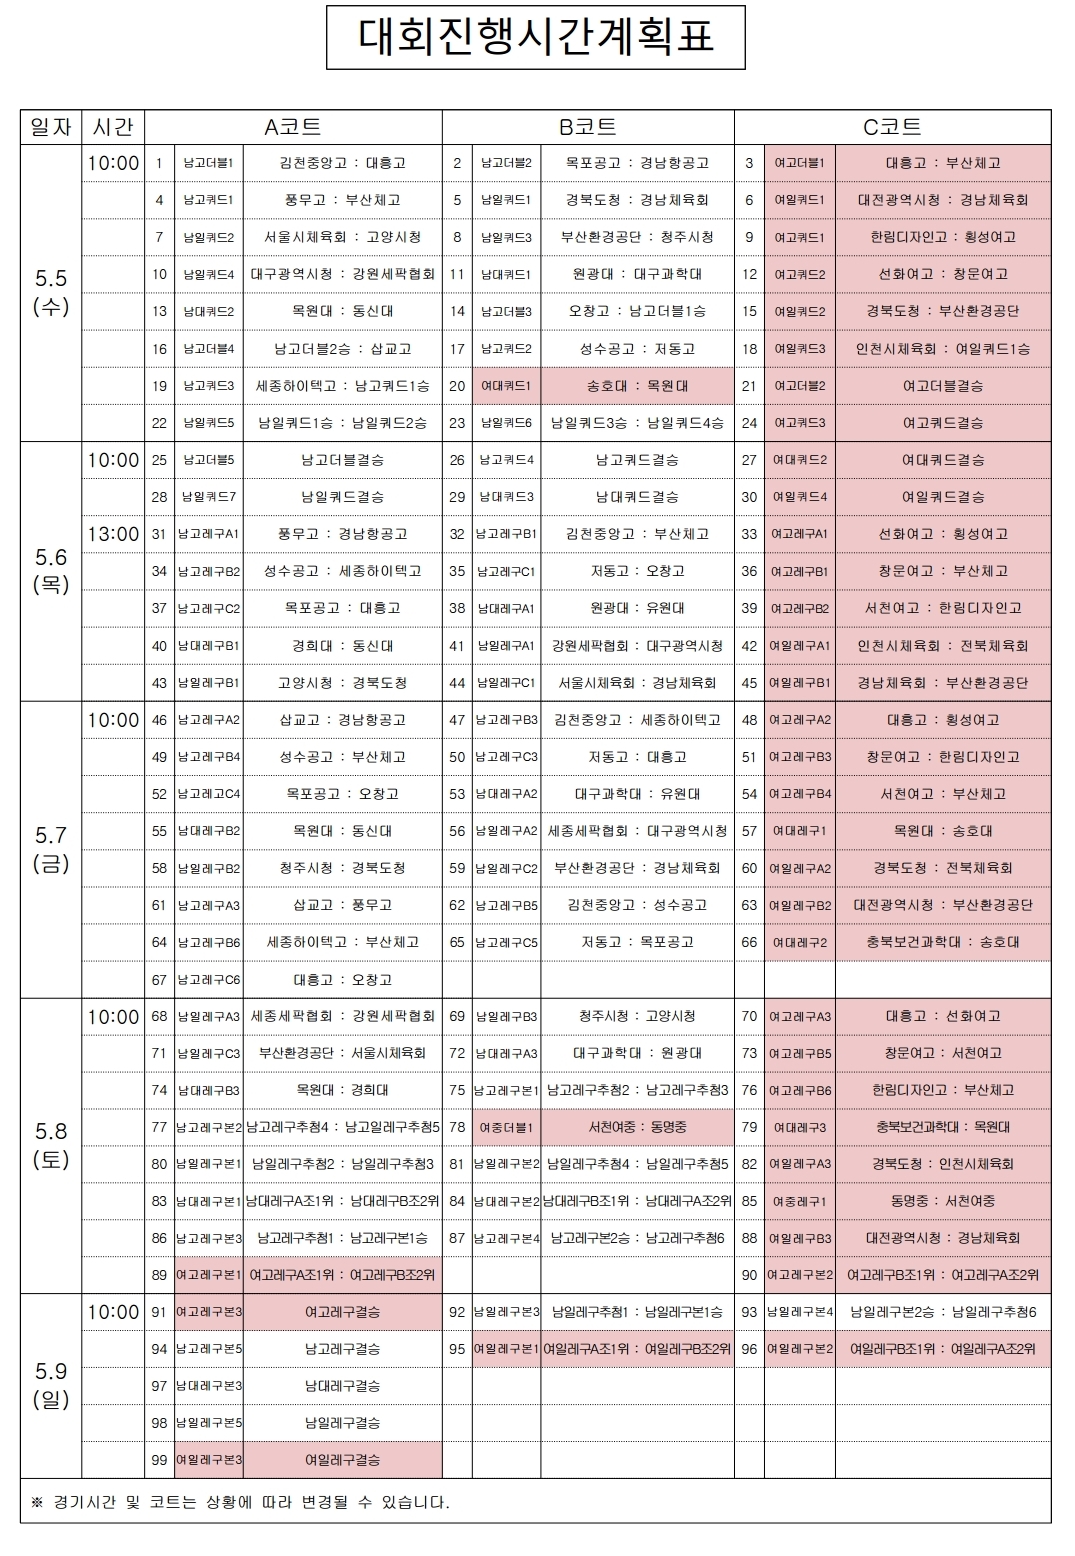 세팍타크로대회진행시간계획표